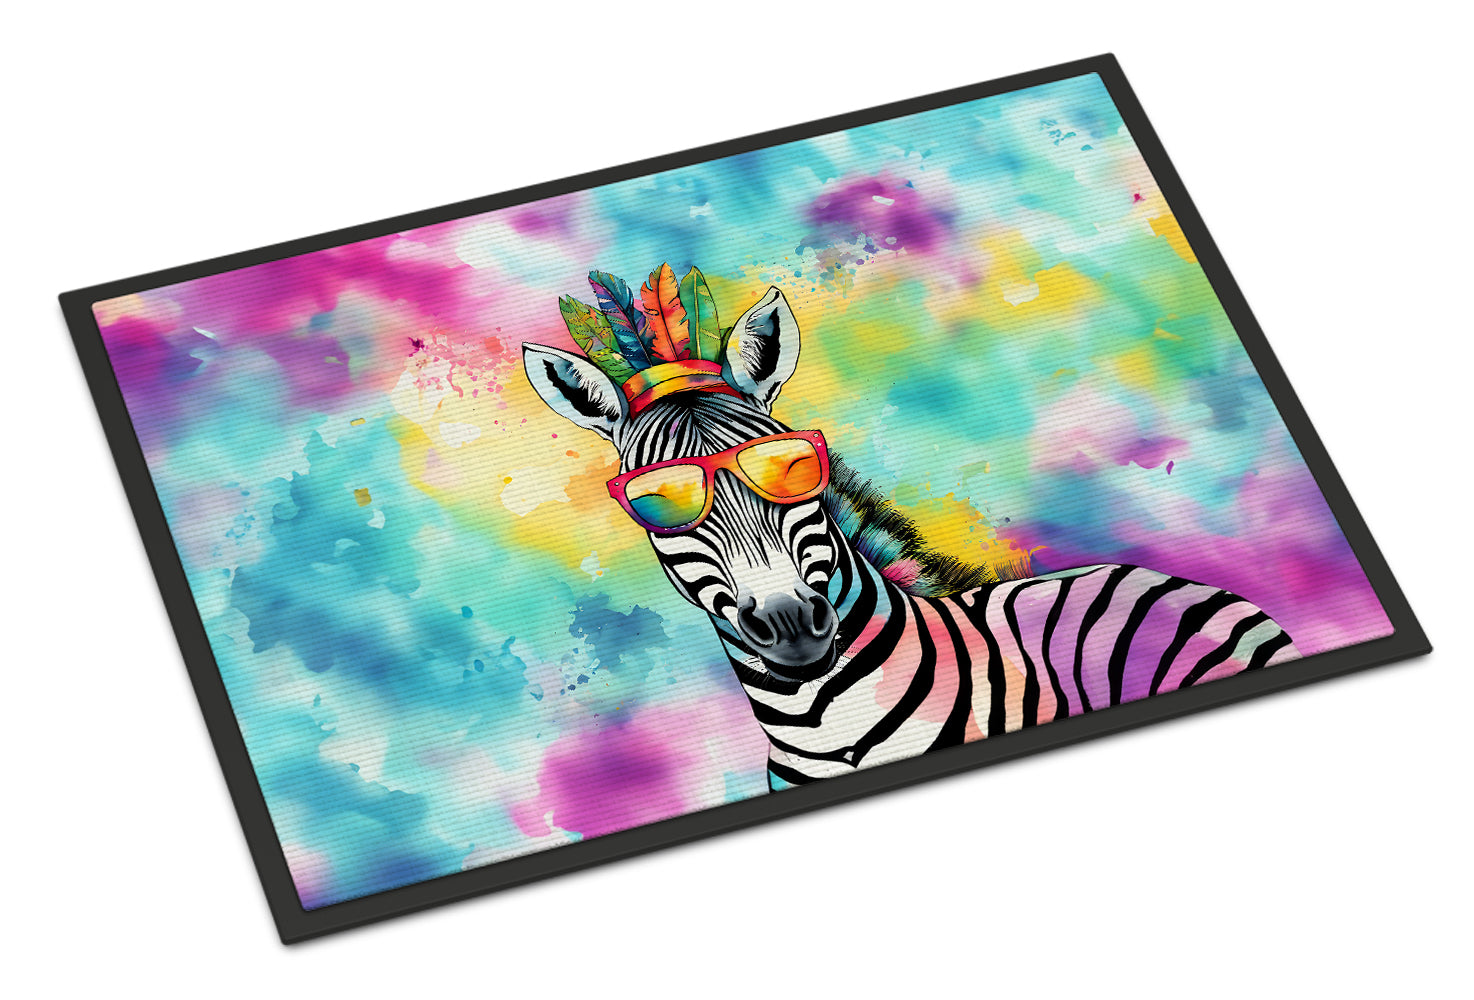 Buy this Hippie Animal Zebra Doormat